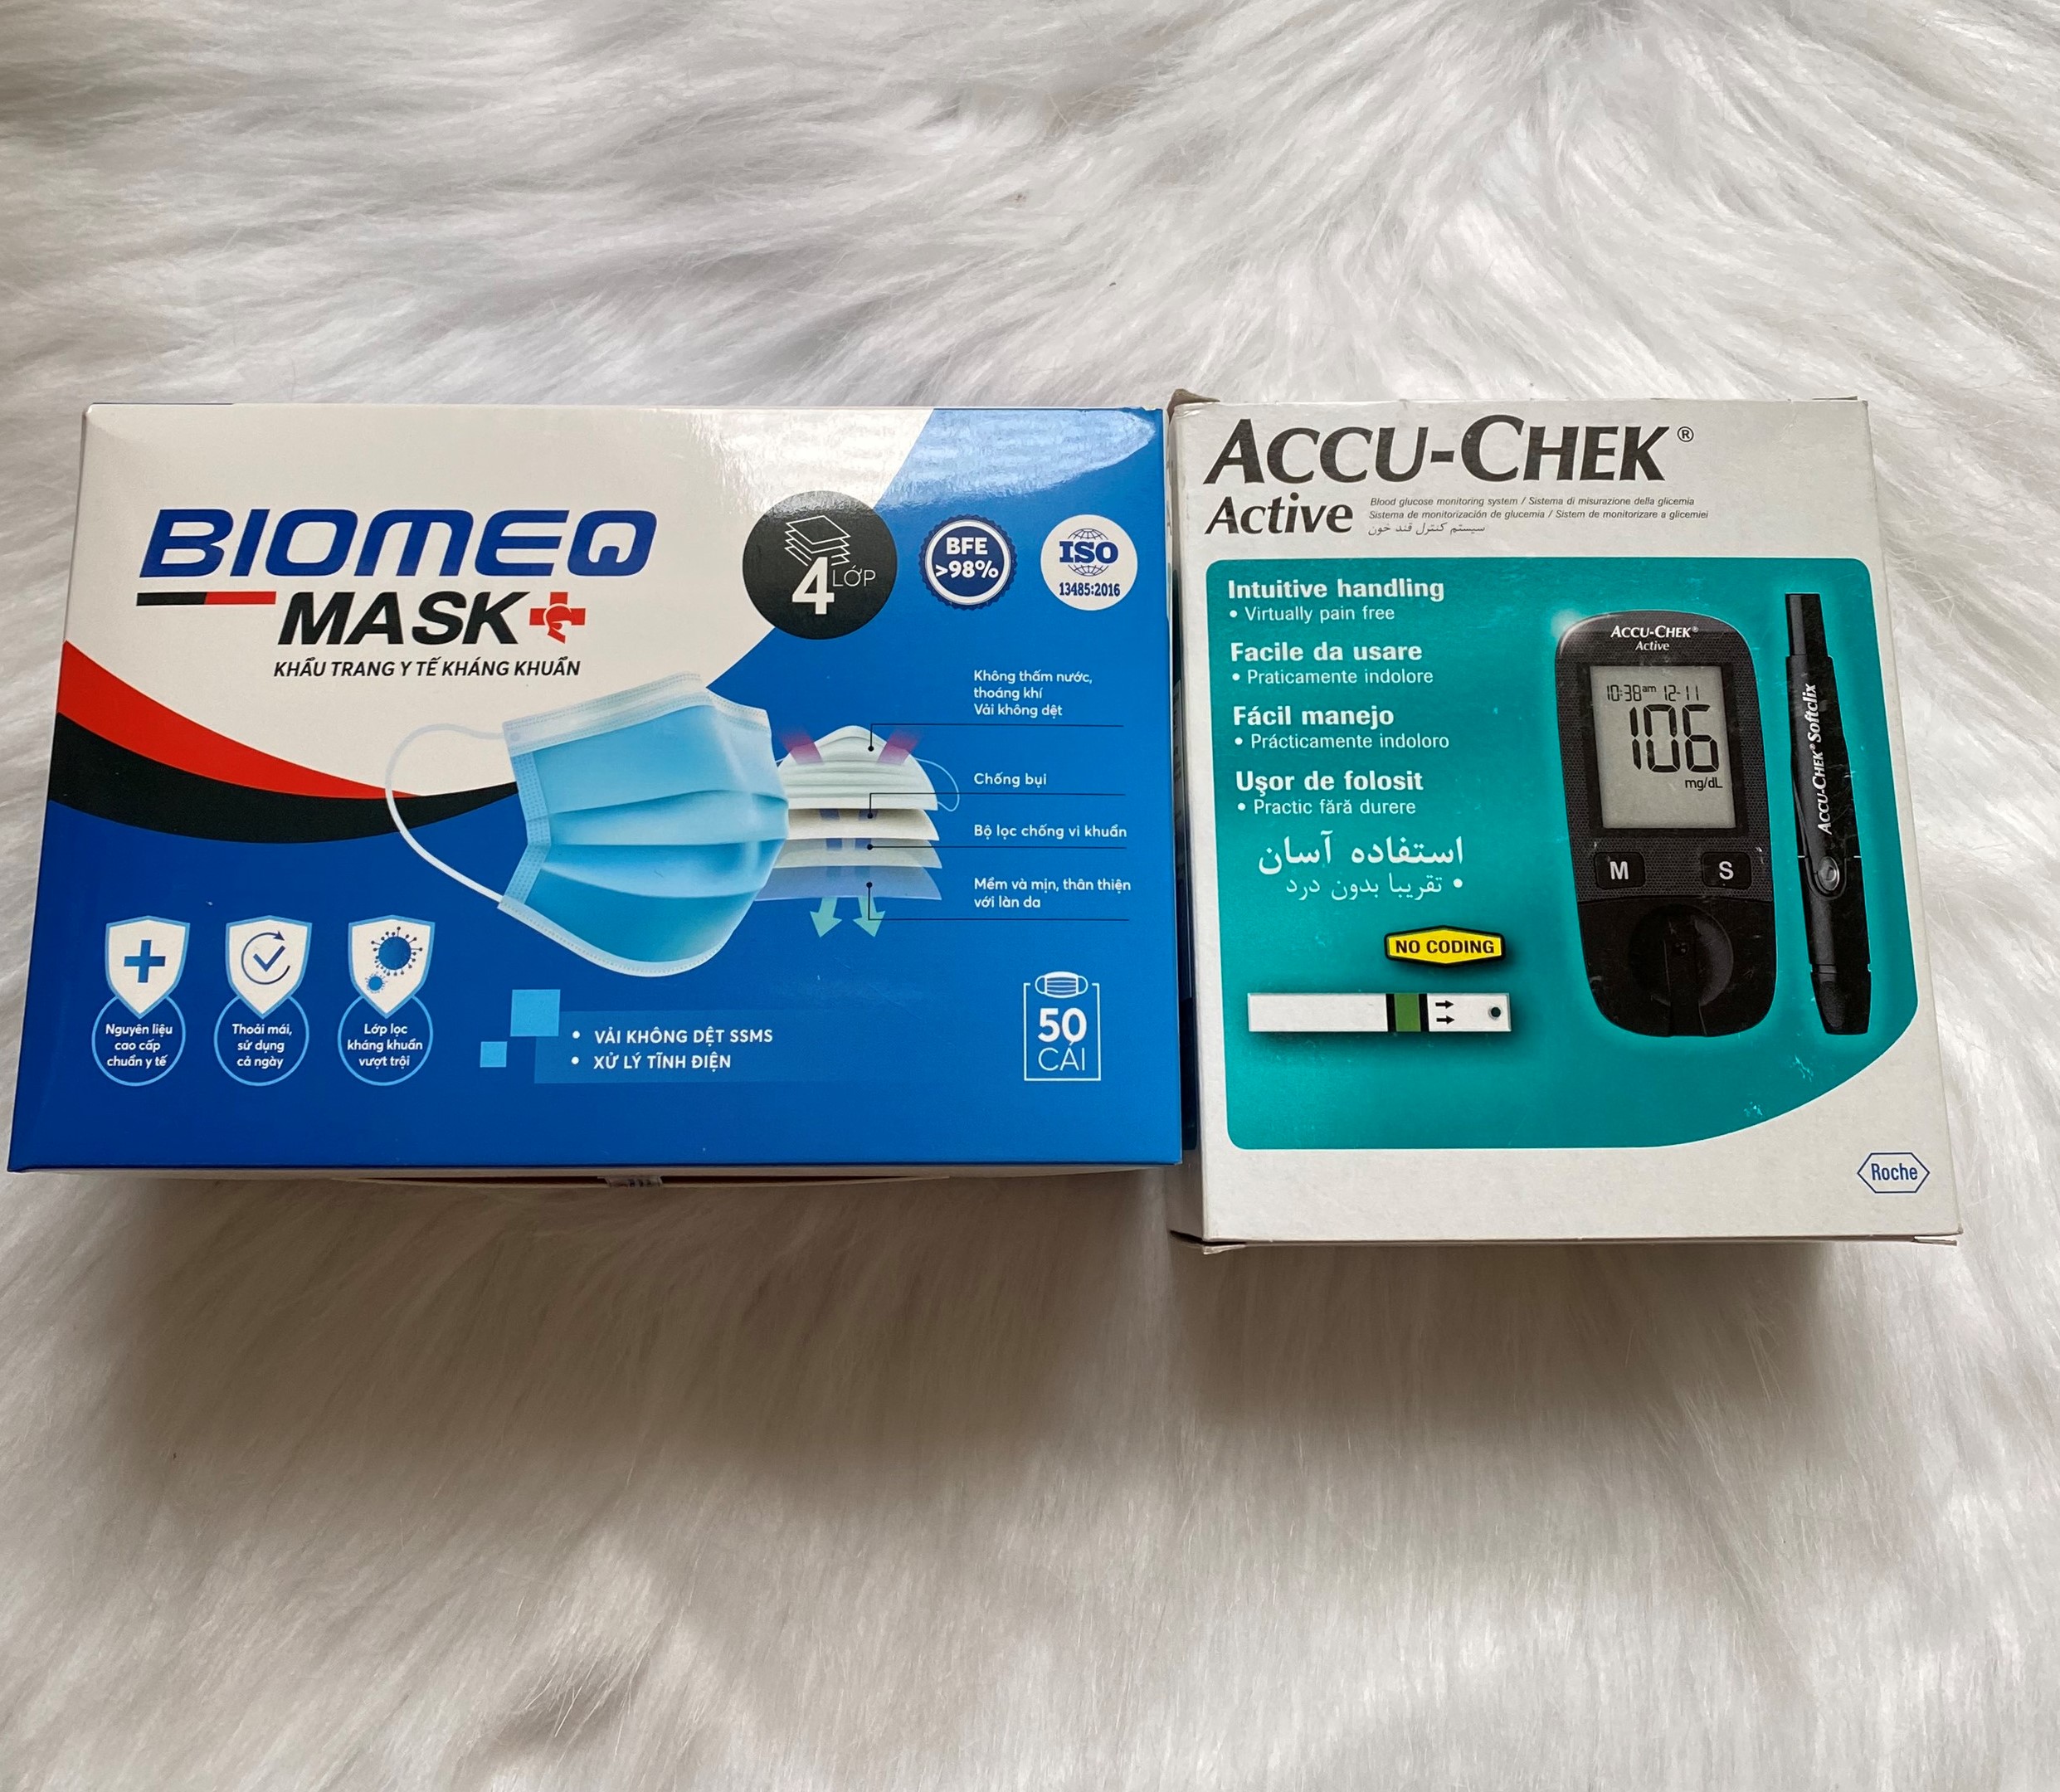 Máy Kiểm Tra Đường Huyết Accu Chek Active + tặng kèm 1 hộp khẩu trang y tế cao cấp BIOMEQ